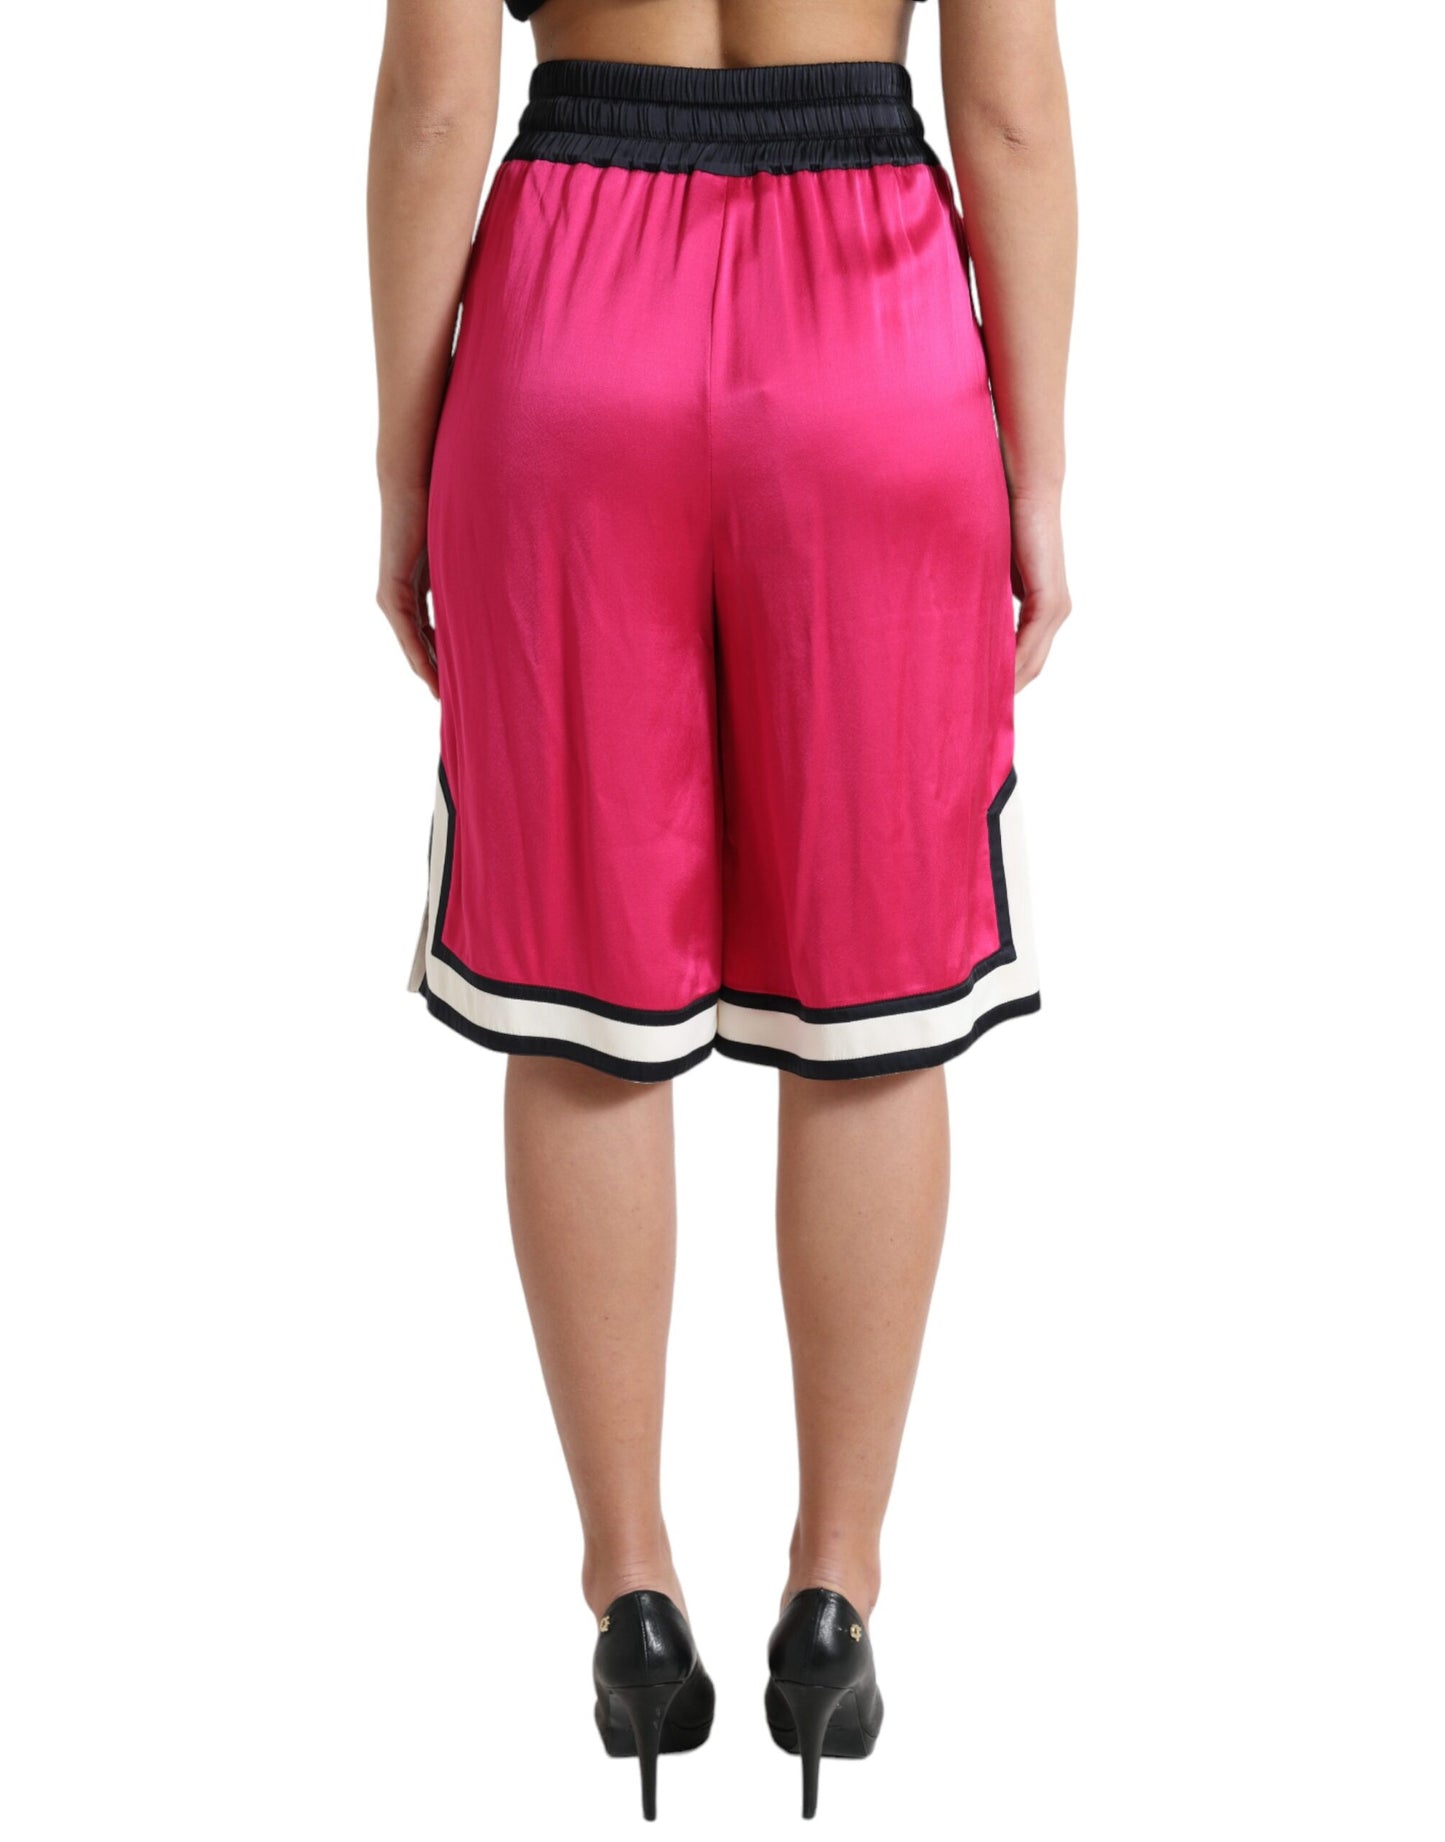 Chic Pink High Waist Jersey Shorts